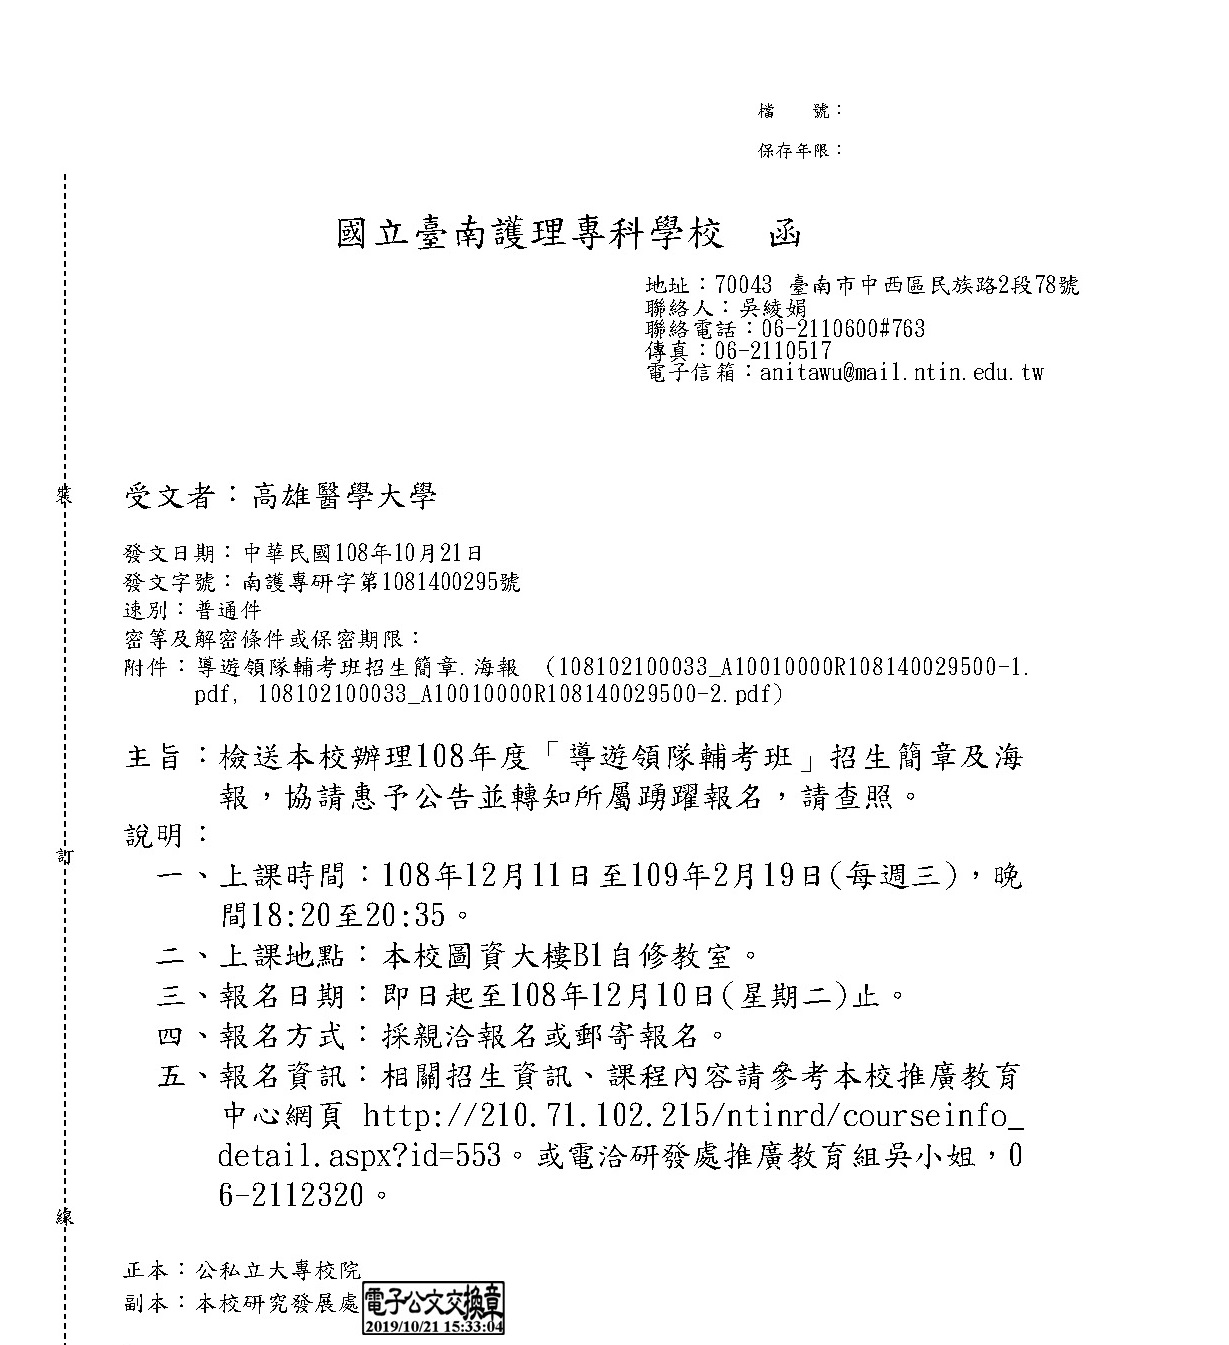 1081025國立臺南護理專科學校課程宣傳公文 頁面 1